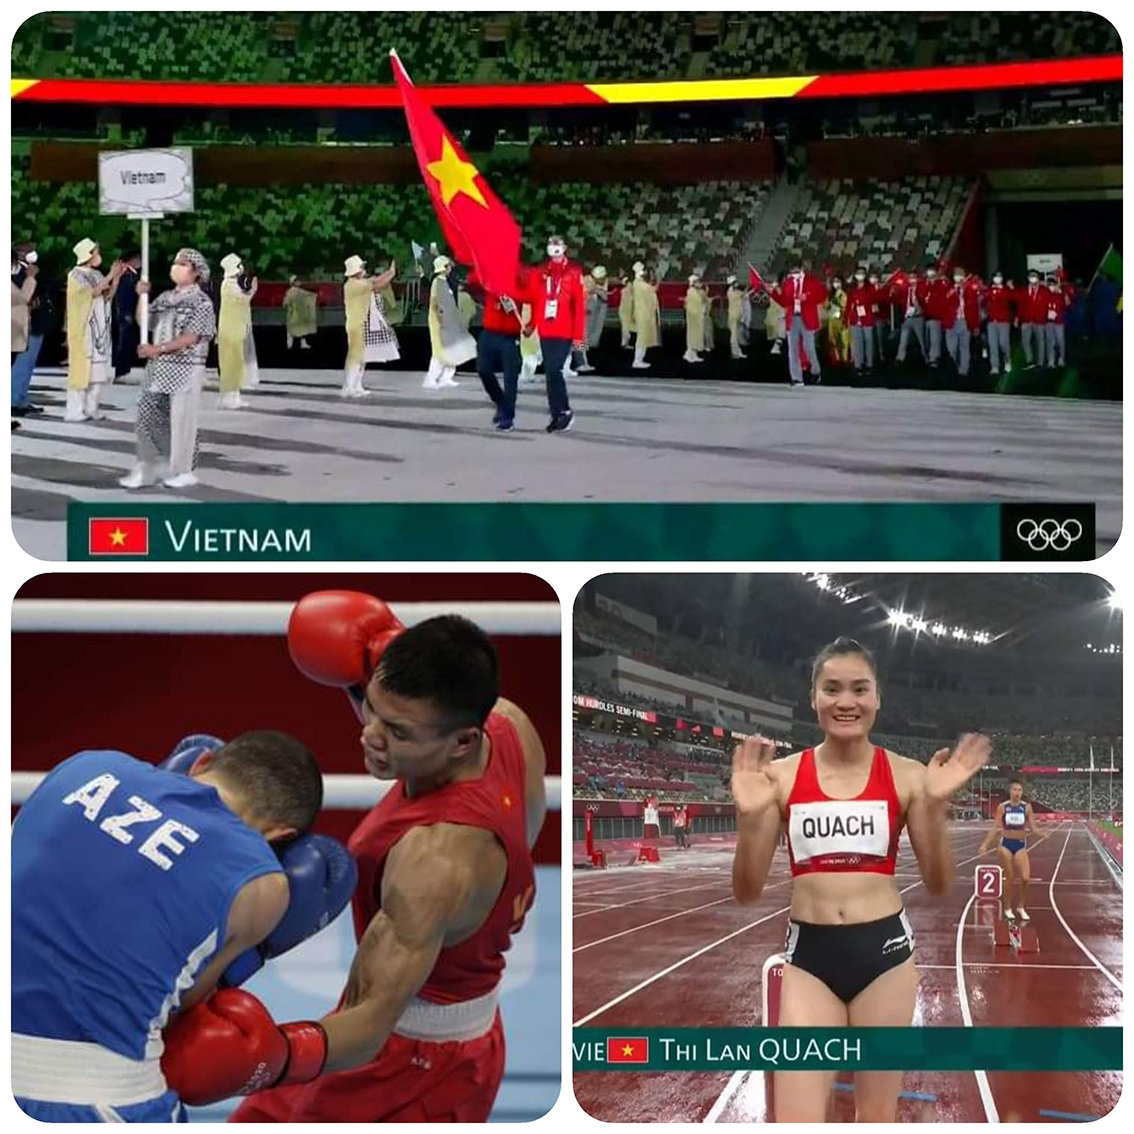 Dù không giành được huy chương song nhiều VĐV đã ghi dấu ấn Việt Nam tại ngày hội thể thao lớn nhất thế giới - Olympic Tokyo 2020